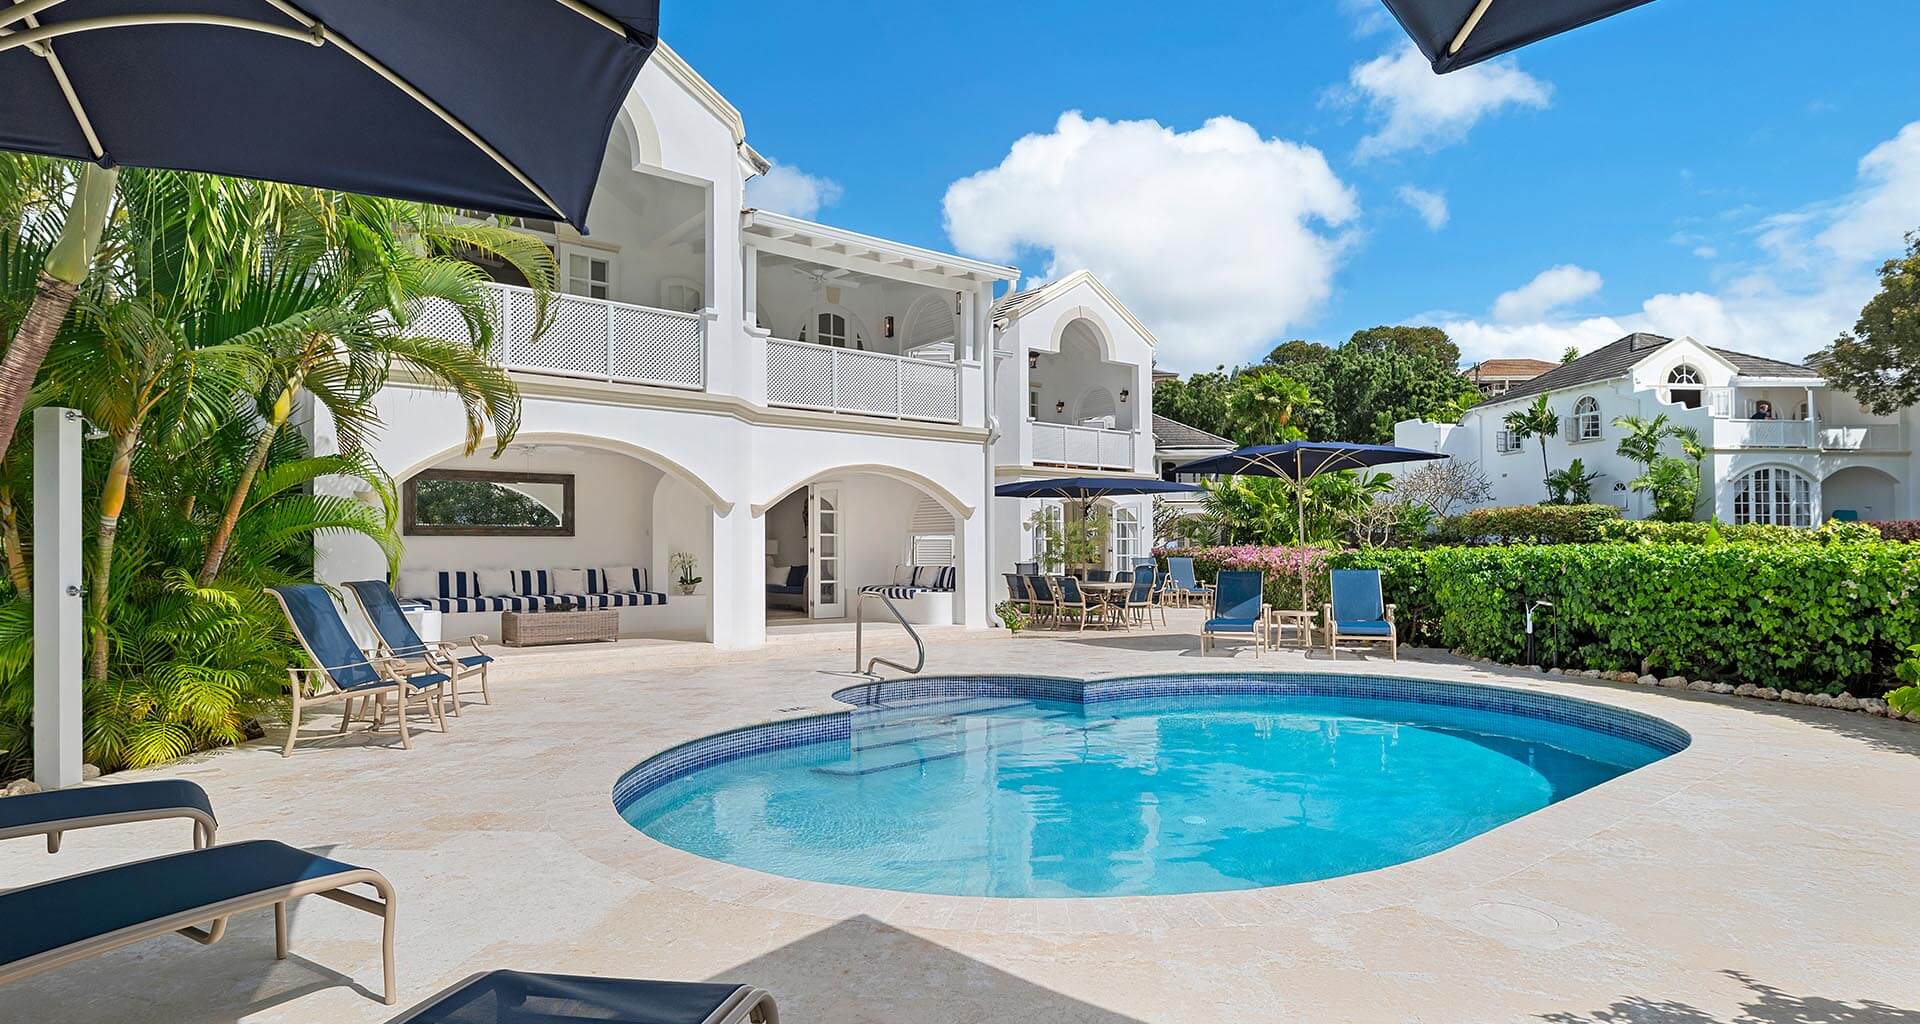 Barbados - Royal Westmoreland Villa Gallery